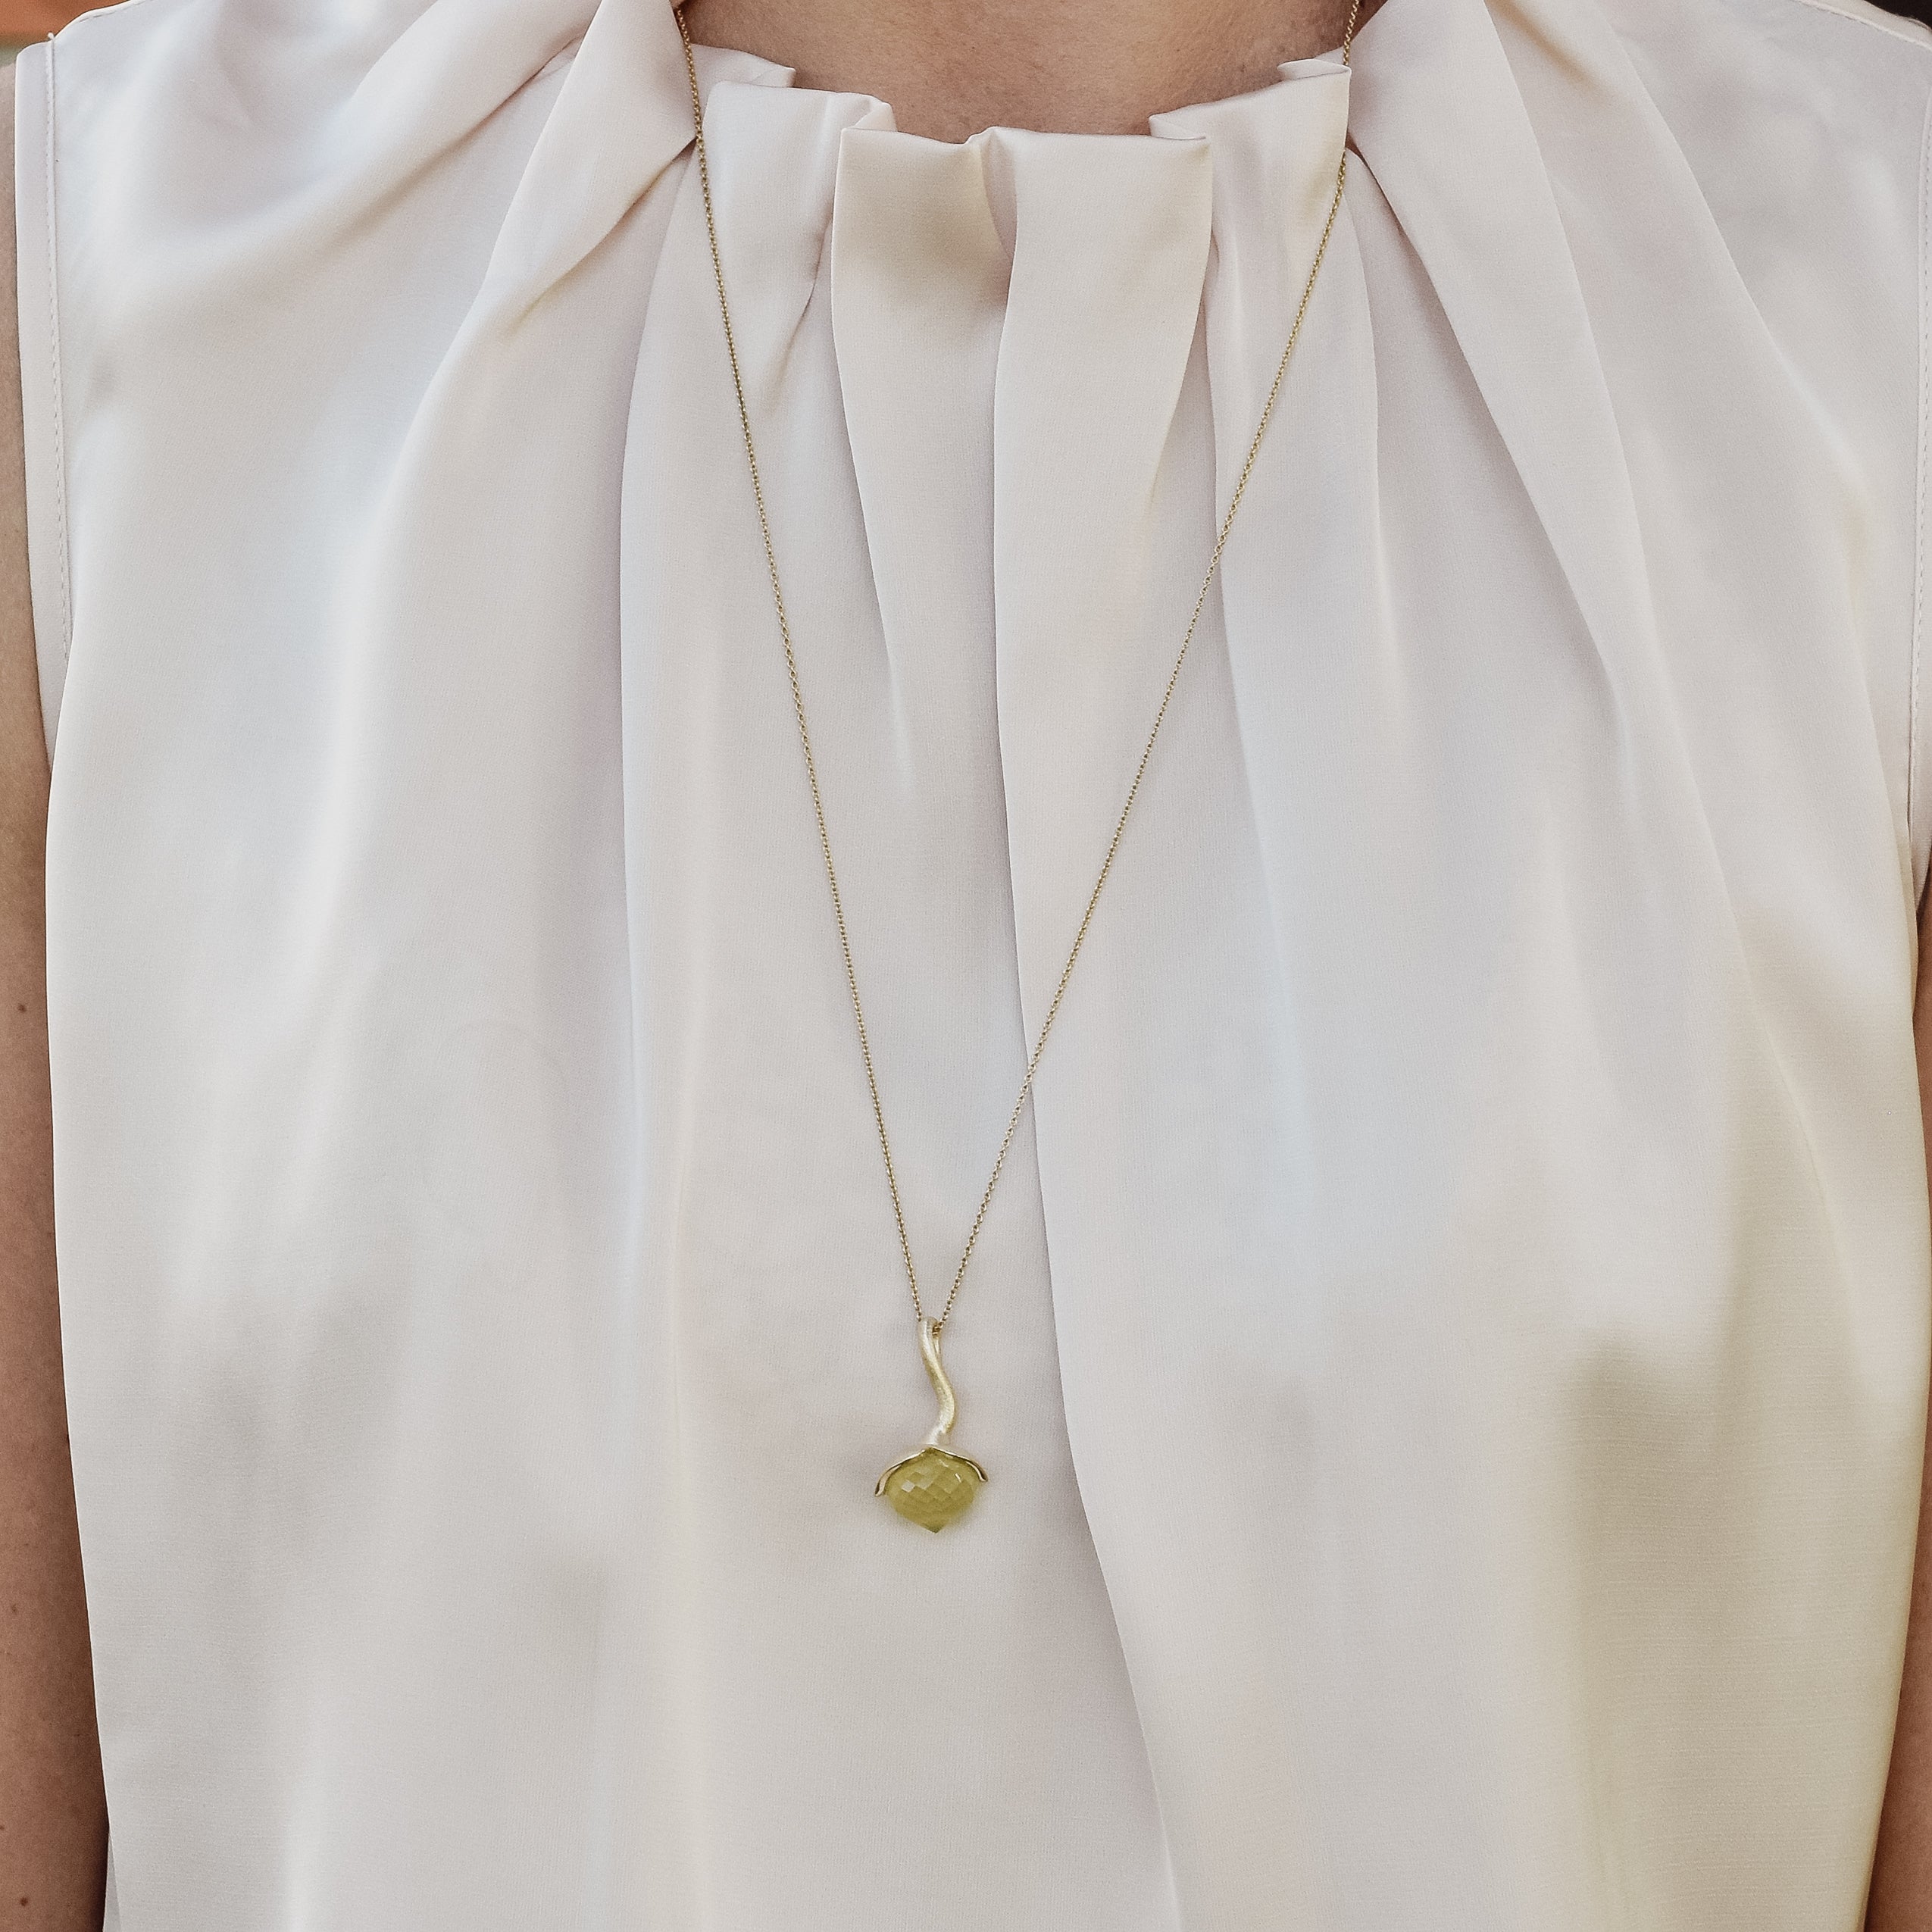 Dolce pendant "big" with lemon quartz 925/-